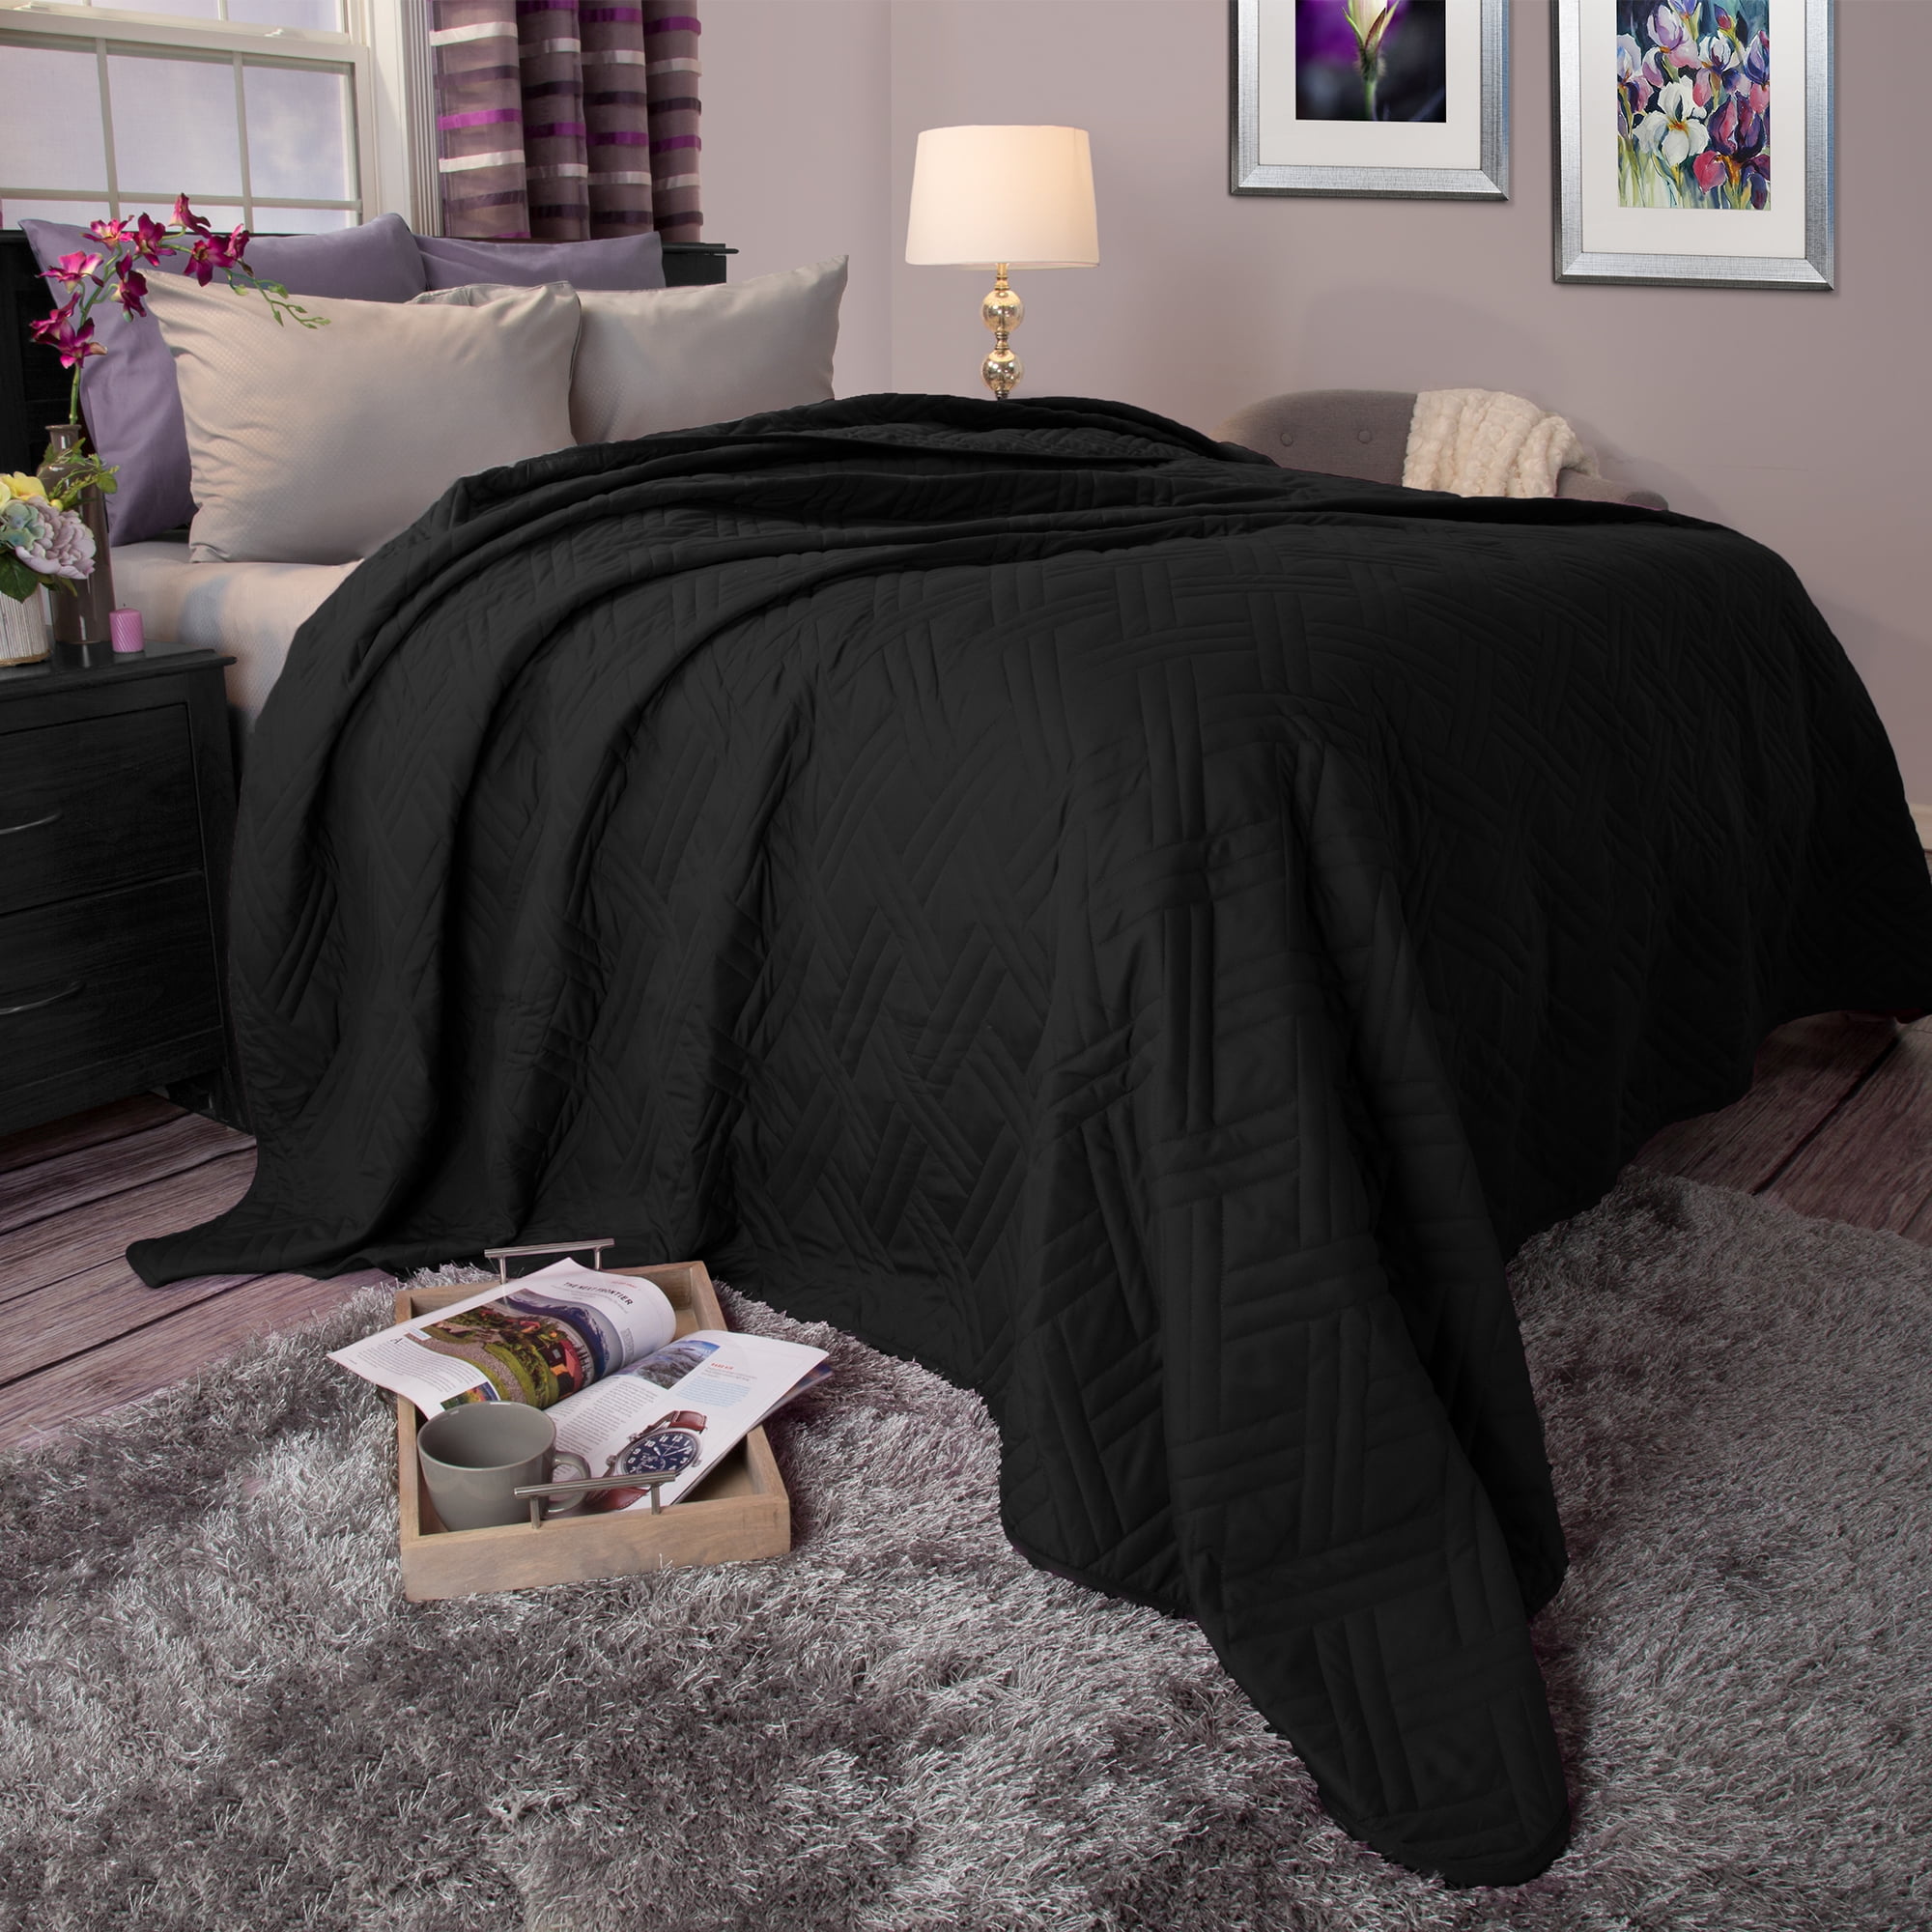 Details about   Cozy Bedding Sheet Set 4 PCs OR 6 PCs Organic Cotton US Sizes Solid/Strip Colors 